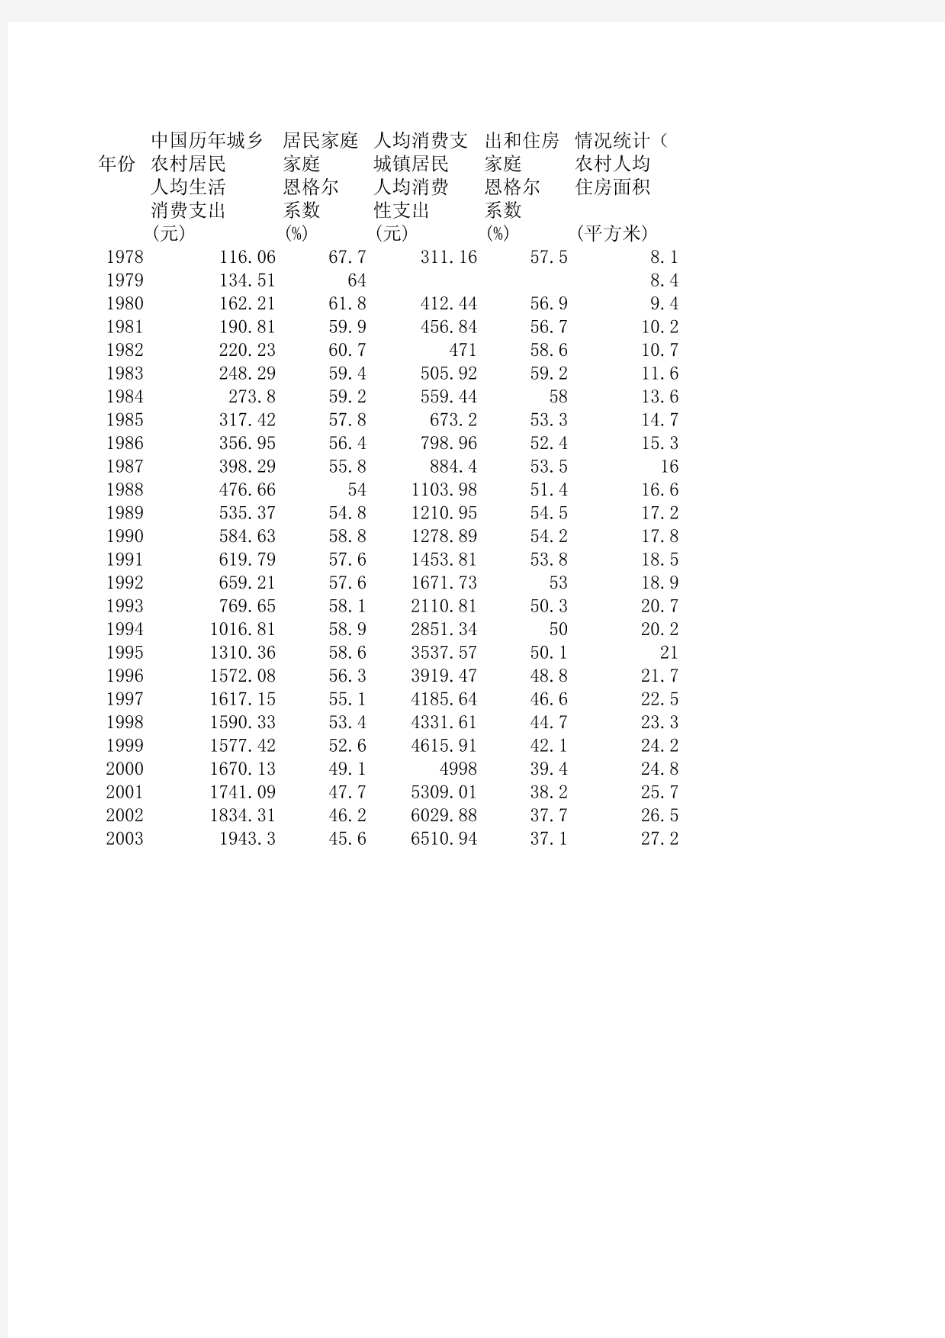 中国历年城乡居民家庭人均消费支出和住房情况统计